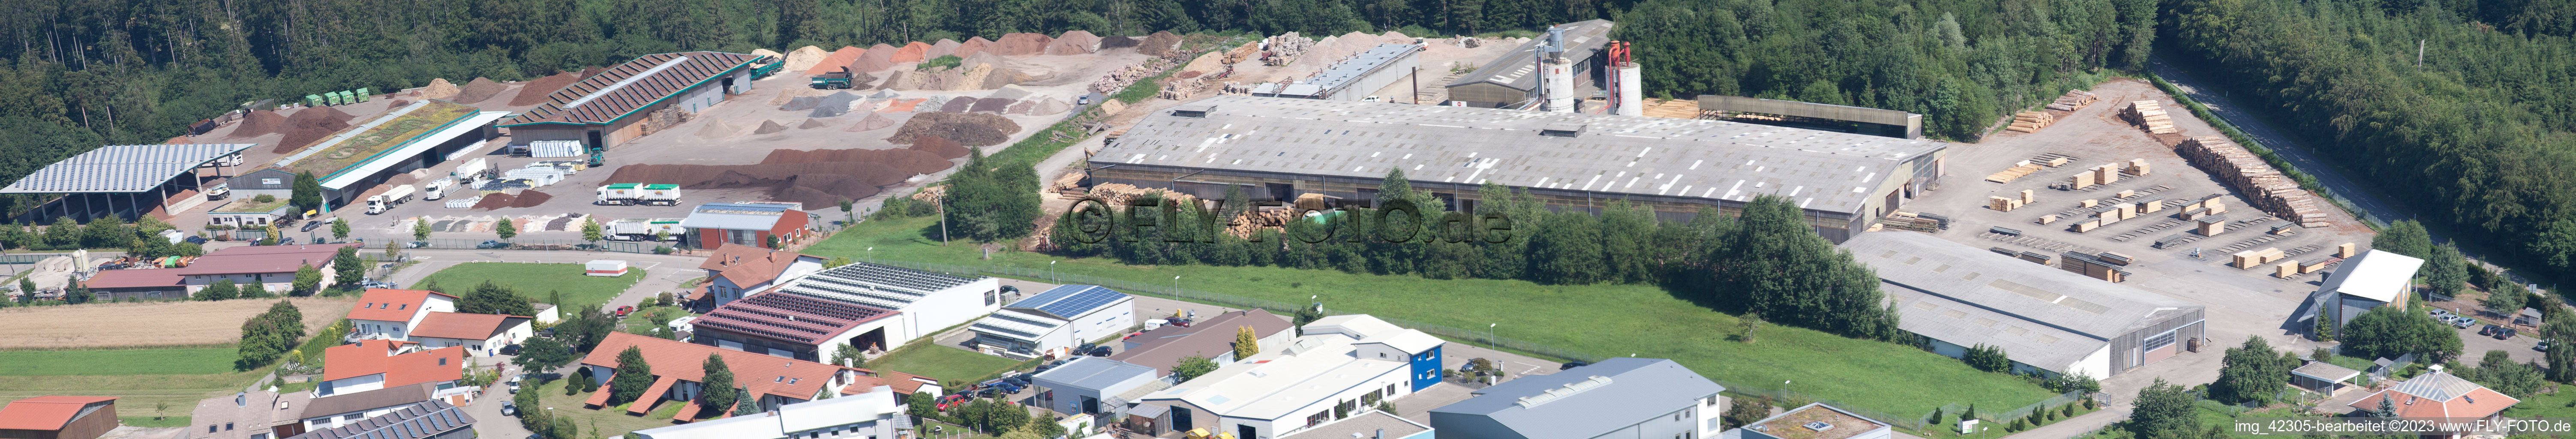 SIH – Holzindustrie GmbH & Co. KG (4 B Holzelemente), Im Schwarzenbusch 2, Marxzell-Pfaffenrot im Bundesland Baden-Württemberg, Deutschland